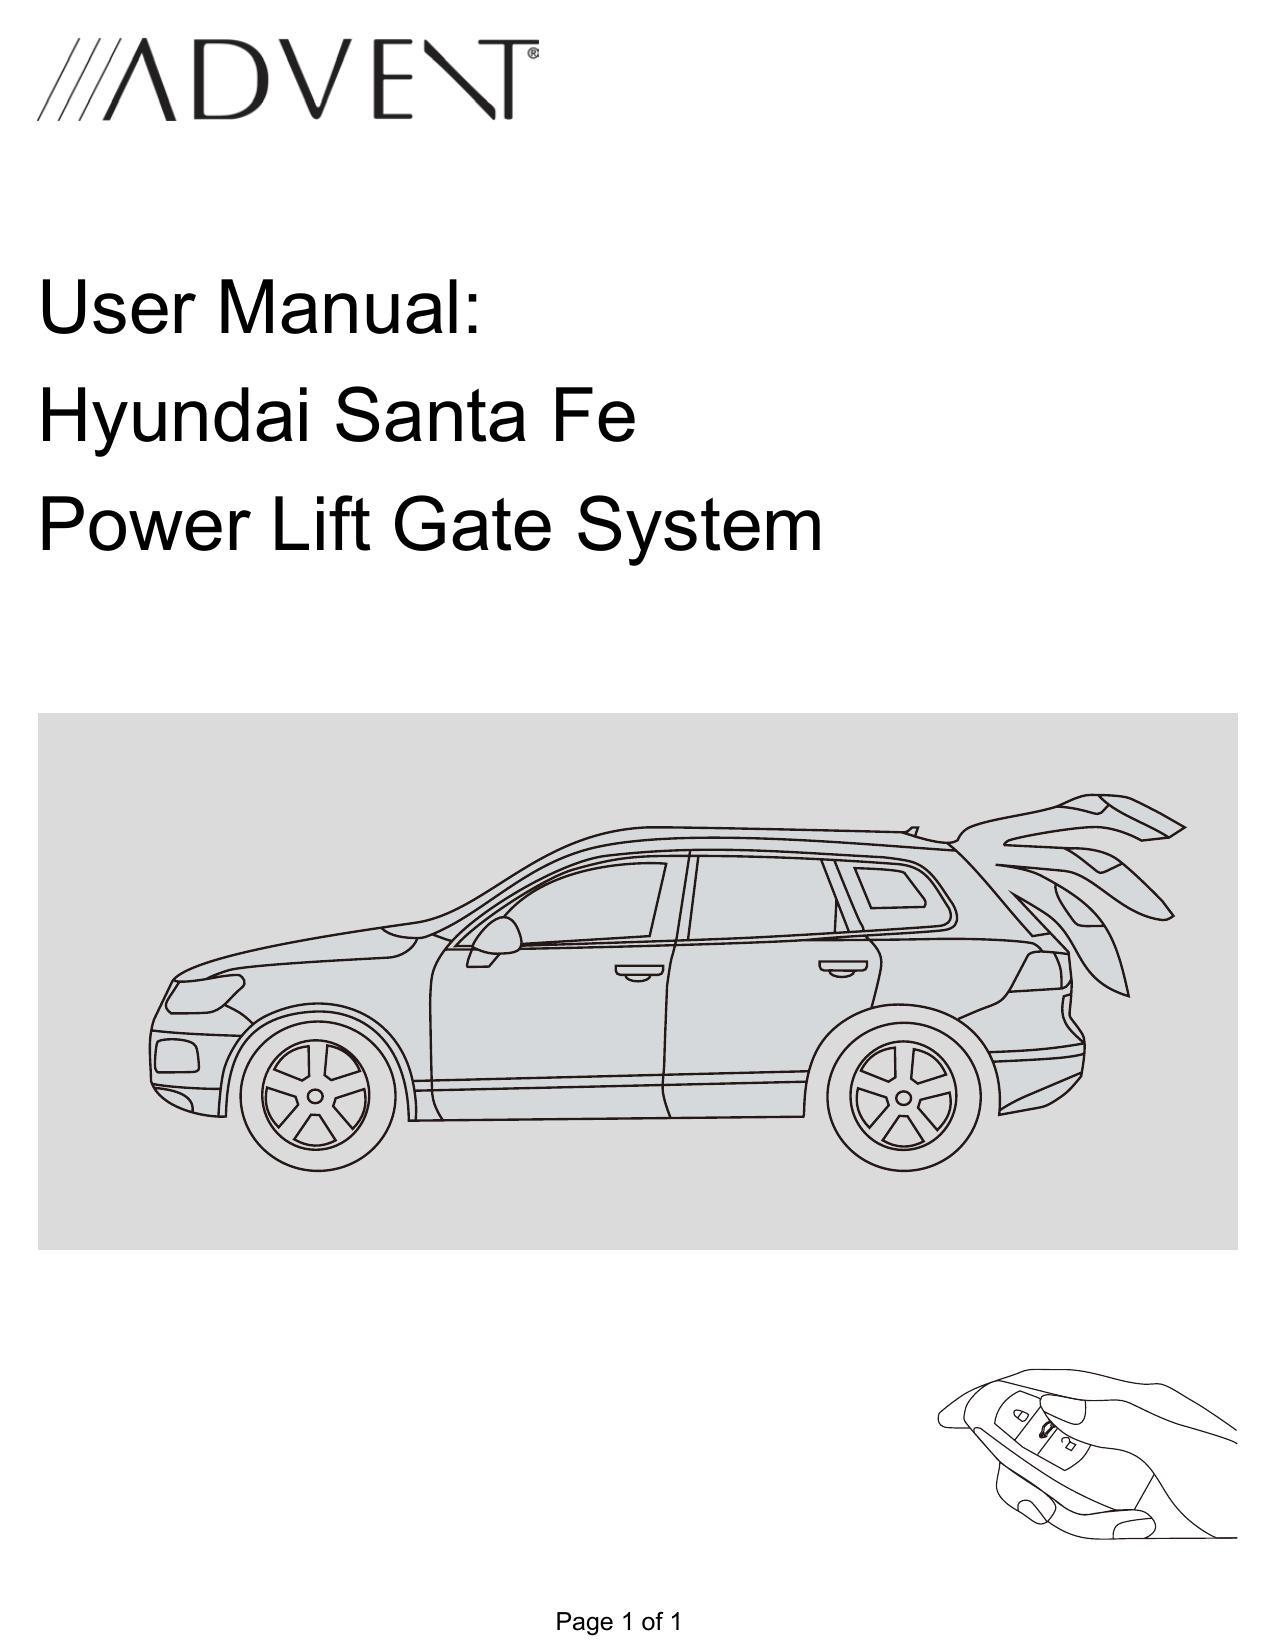 user-manual-hyundai-santa-fe-power-lift-gate-system.pdf